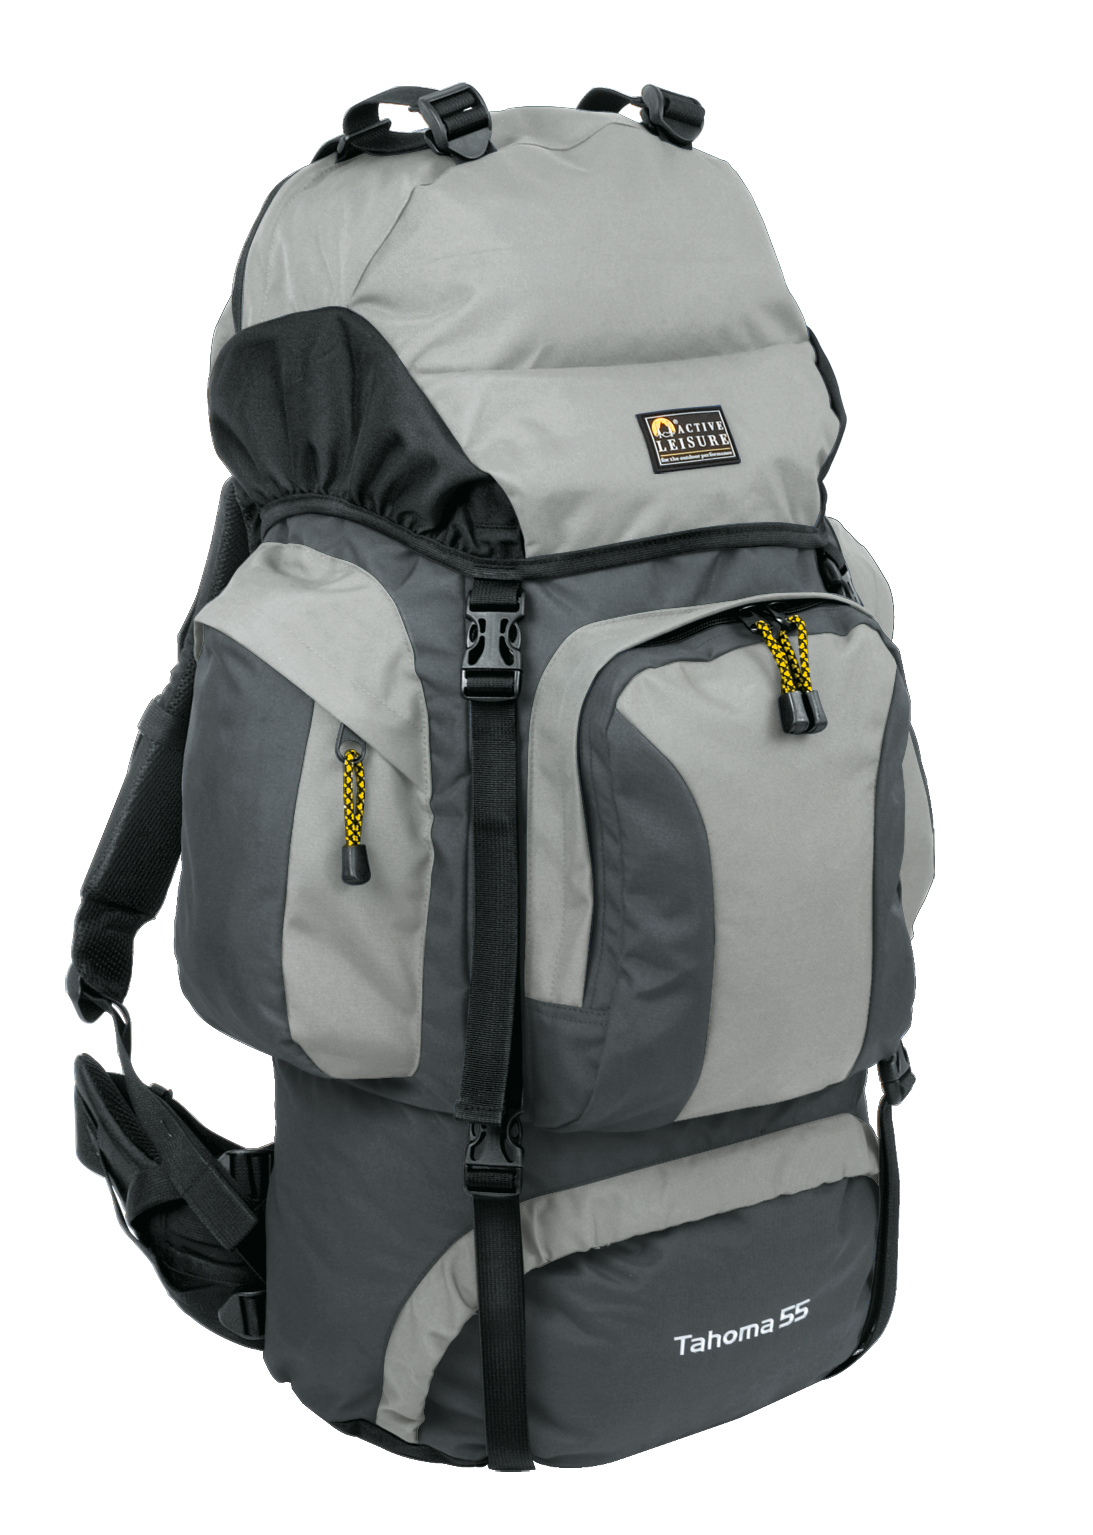 Kan niet eindeloos verkoper Active Leisure Tahoma - Backpack - 75 Liter - Grijs - Trailstore